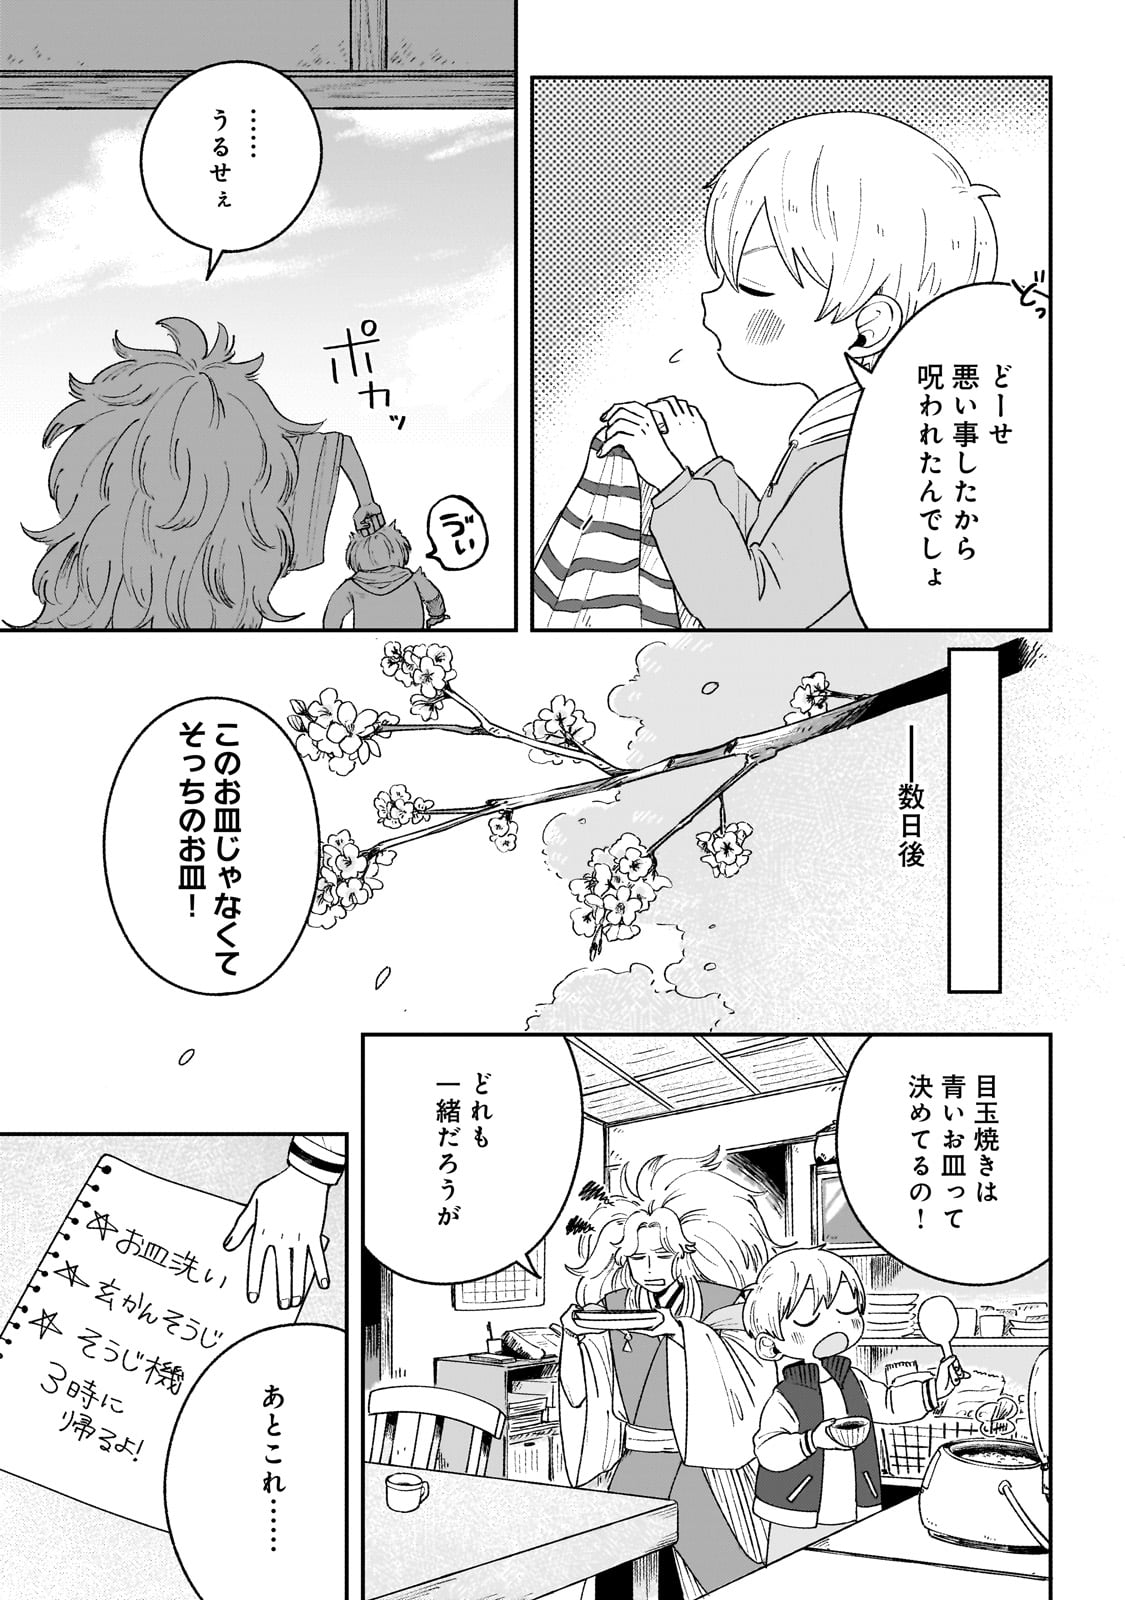 Boku to Ayakashi no 365 Nichi - Chapter 2 - Page 27